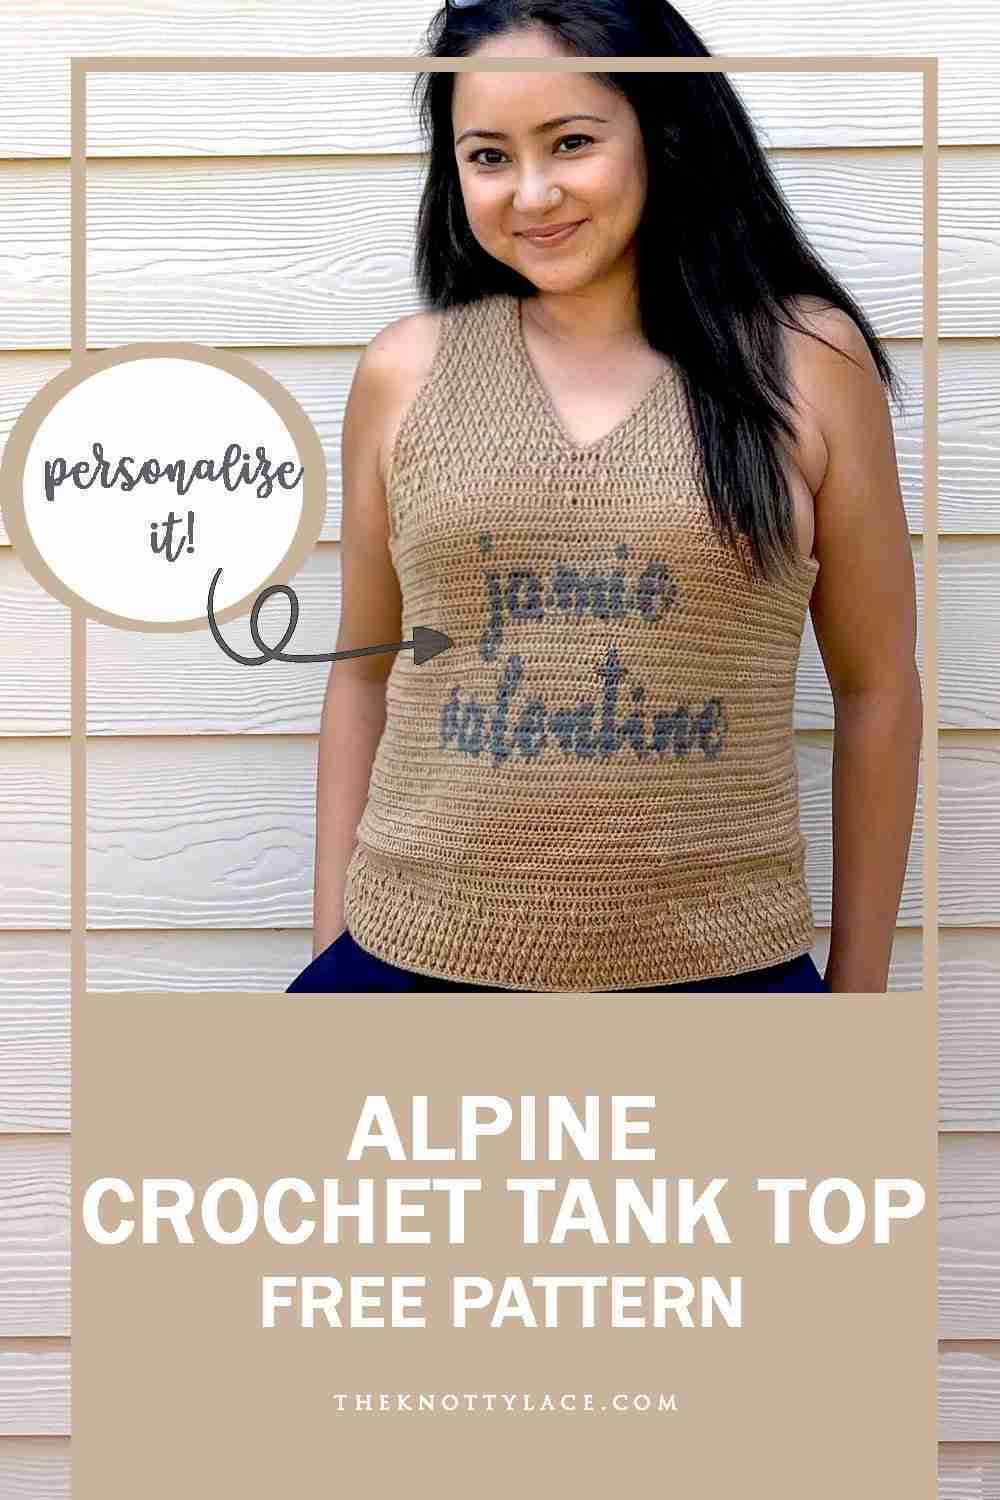 Alpine-personalized-crochet-tank-top-free-pattern